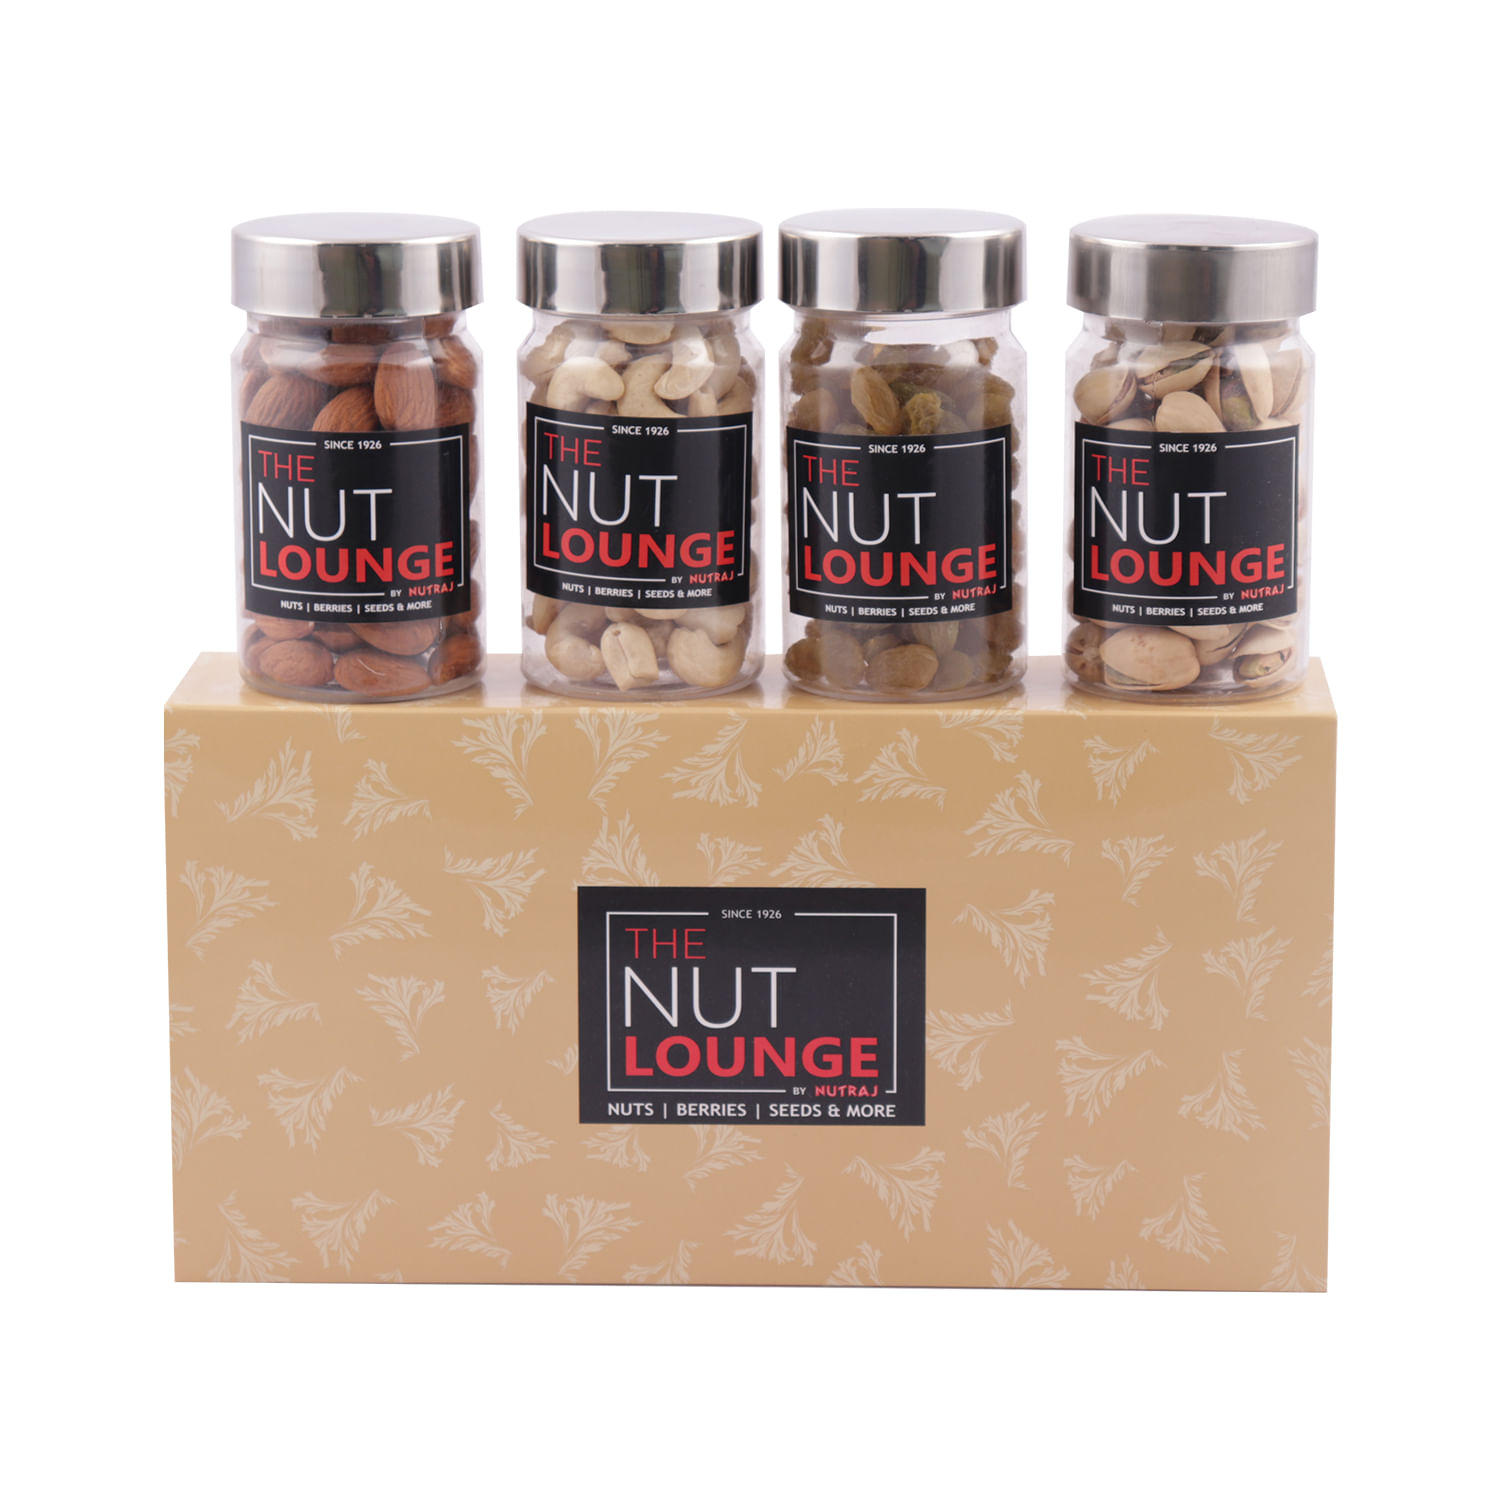 Nutraj Mixed Dry Fruit Gift Pack 400g - (Almond 100g, Cashew 100g, Raisin 100g, Pistachio 100g)